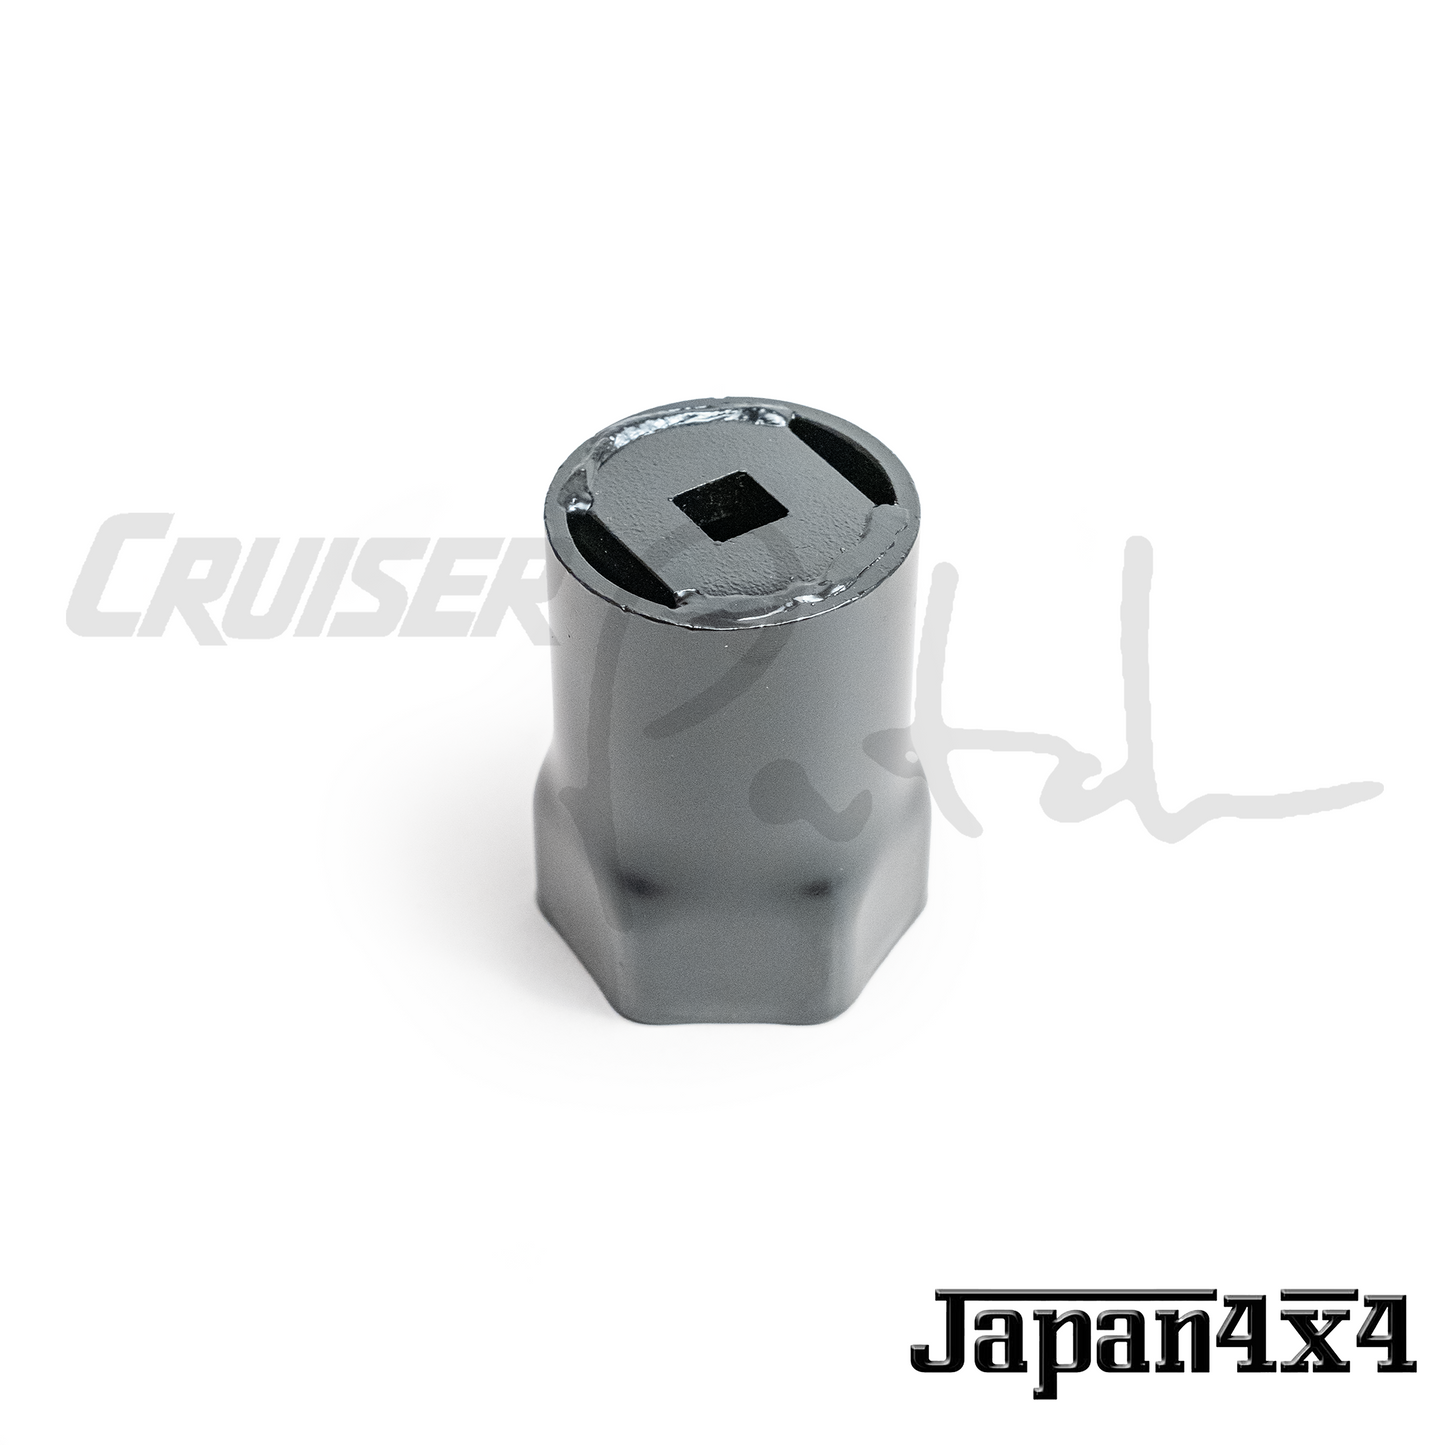 Japan 4x4 55mm 1/2" drive Hub Socket